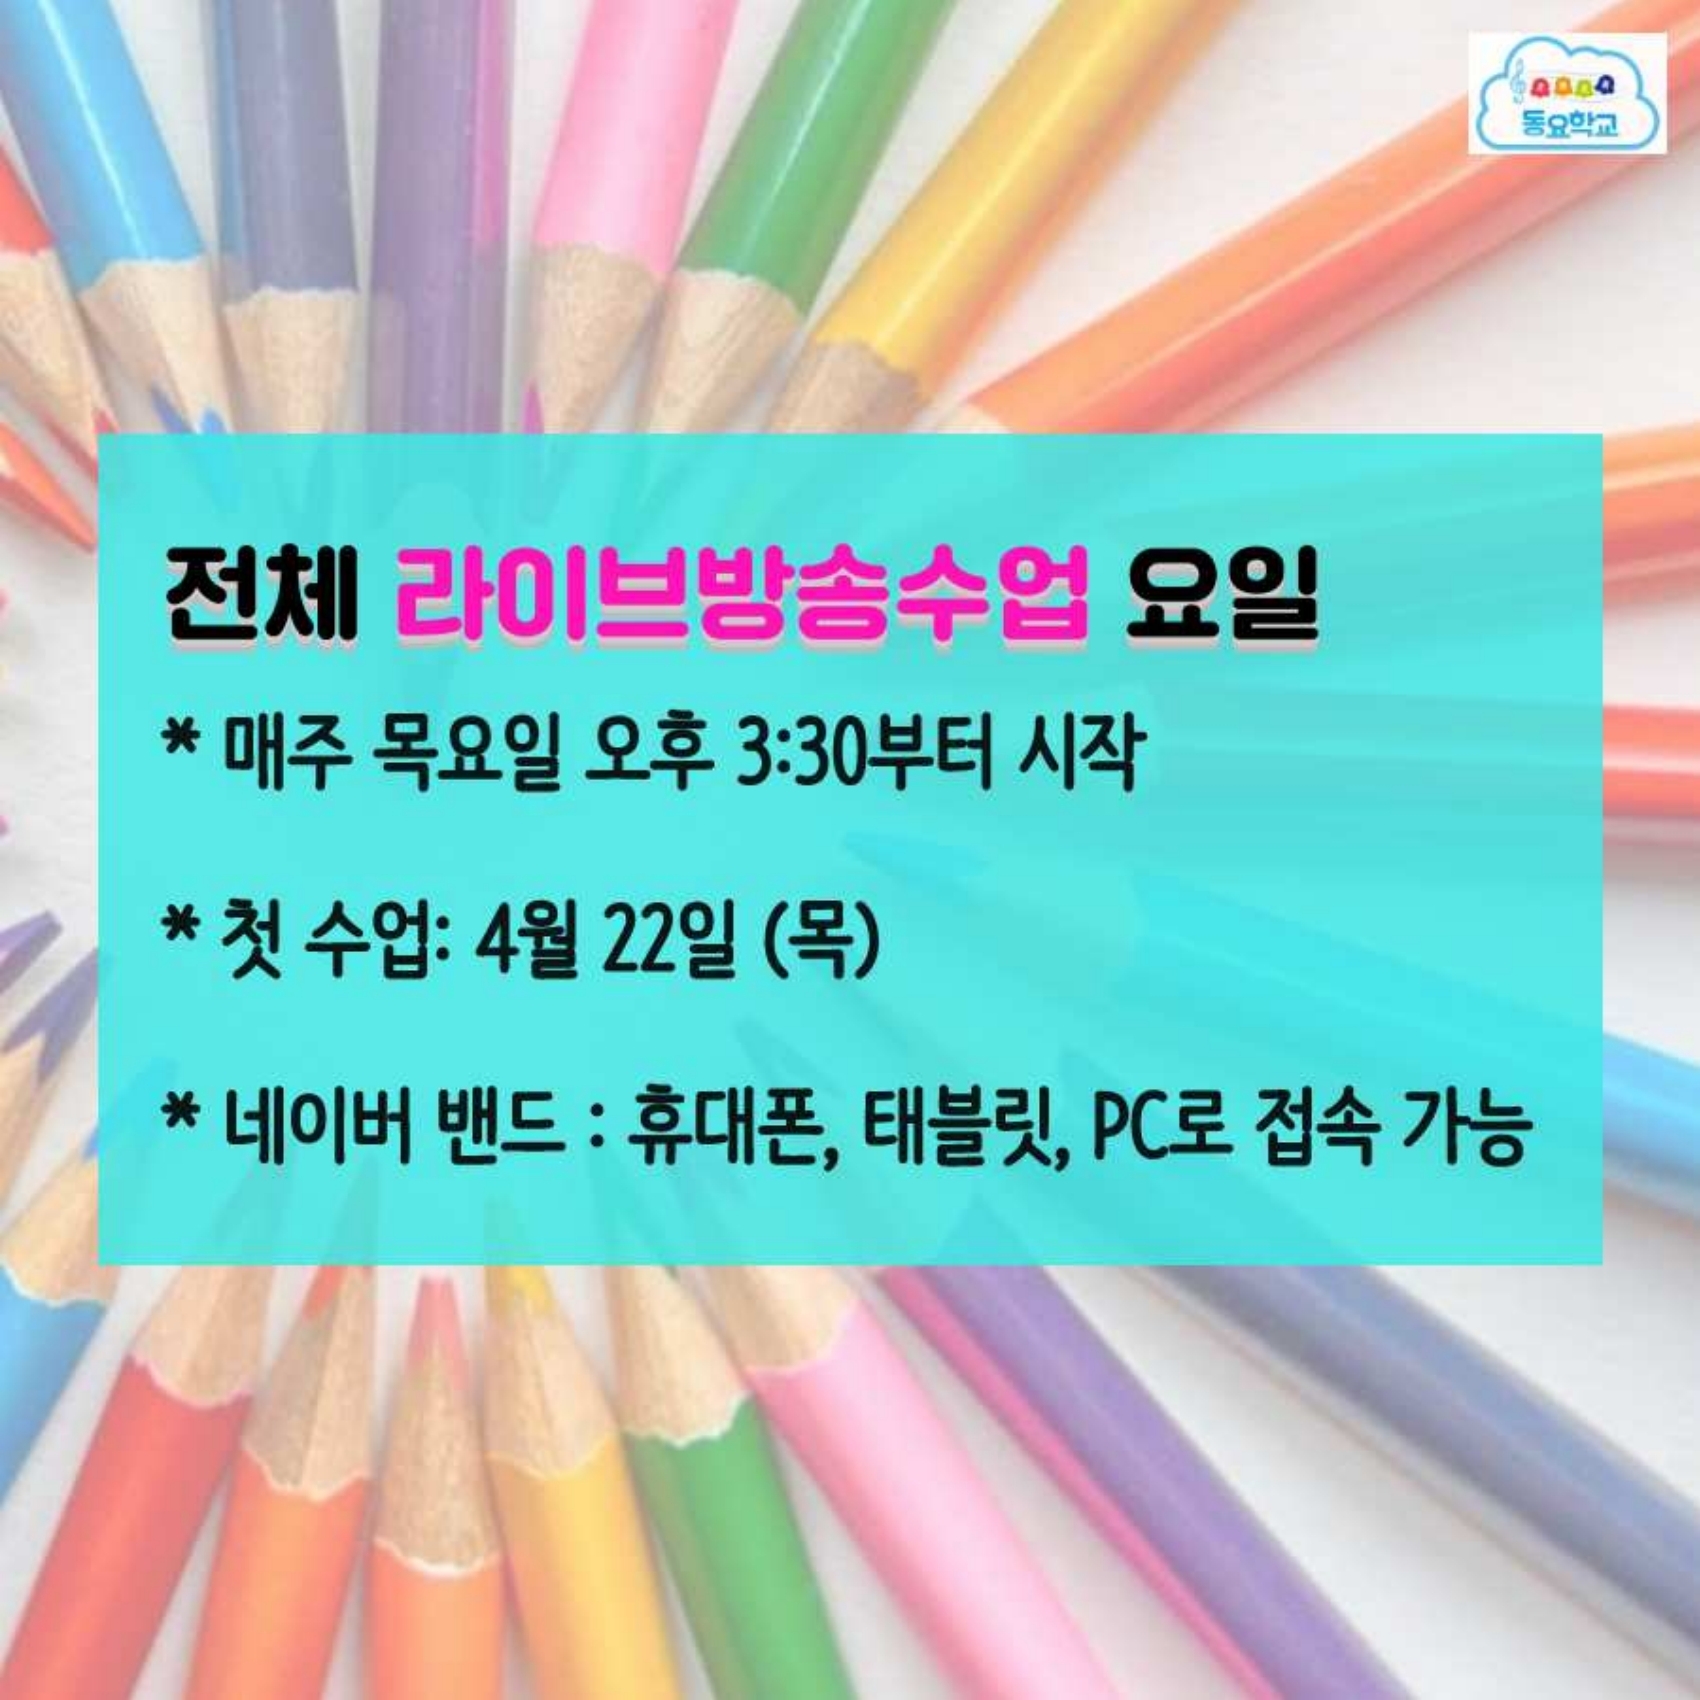 초롱초롱동요학교 2021 신입생 모집 설명 카드뉴스(저용량).pdf_page_06